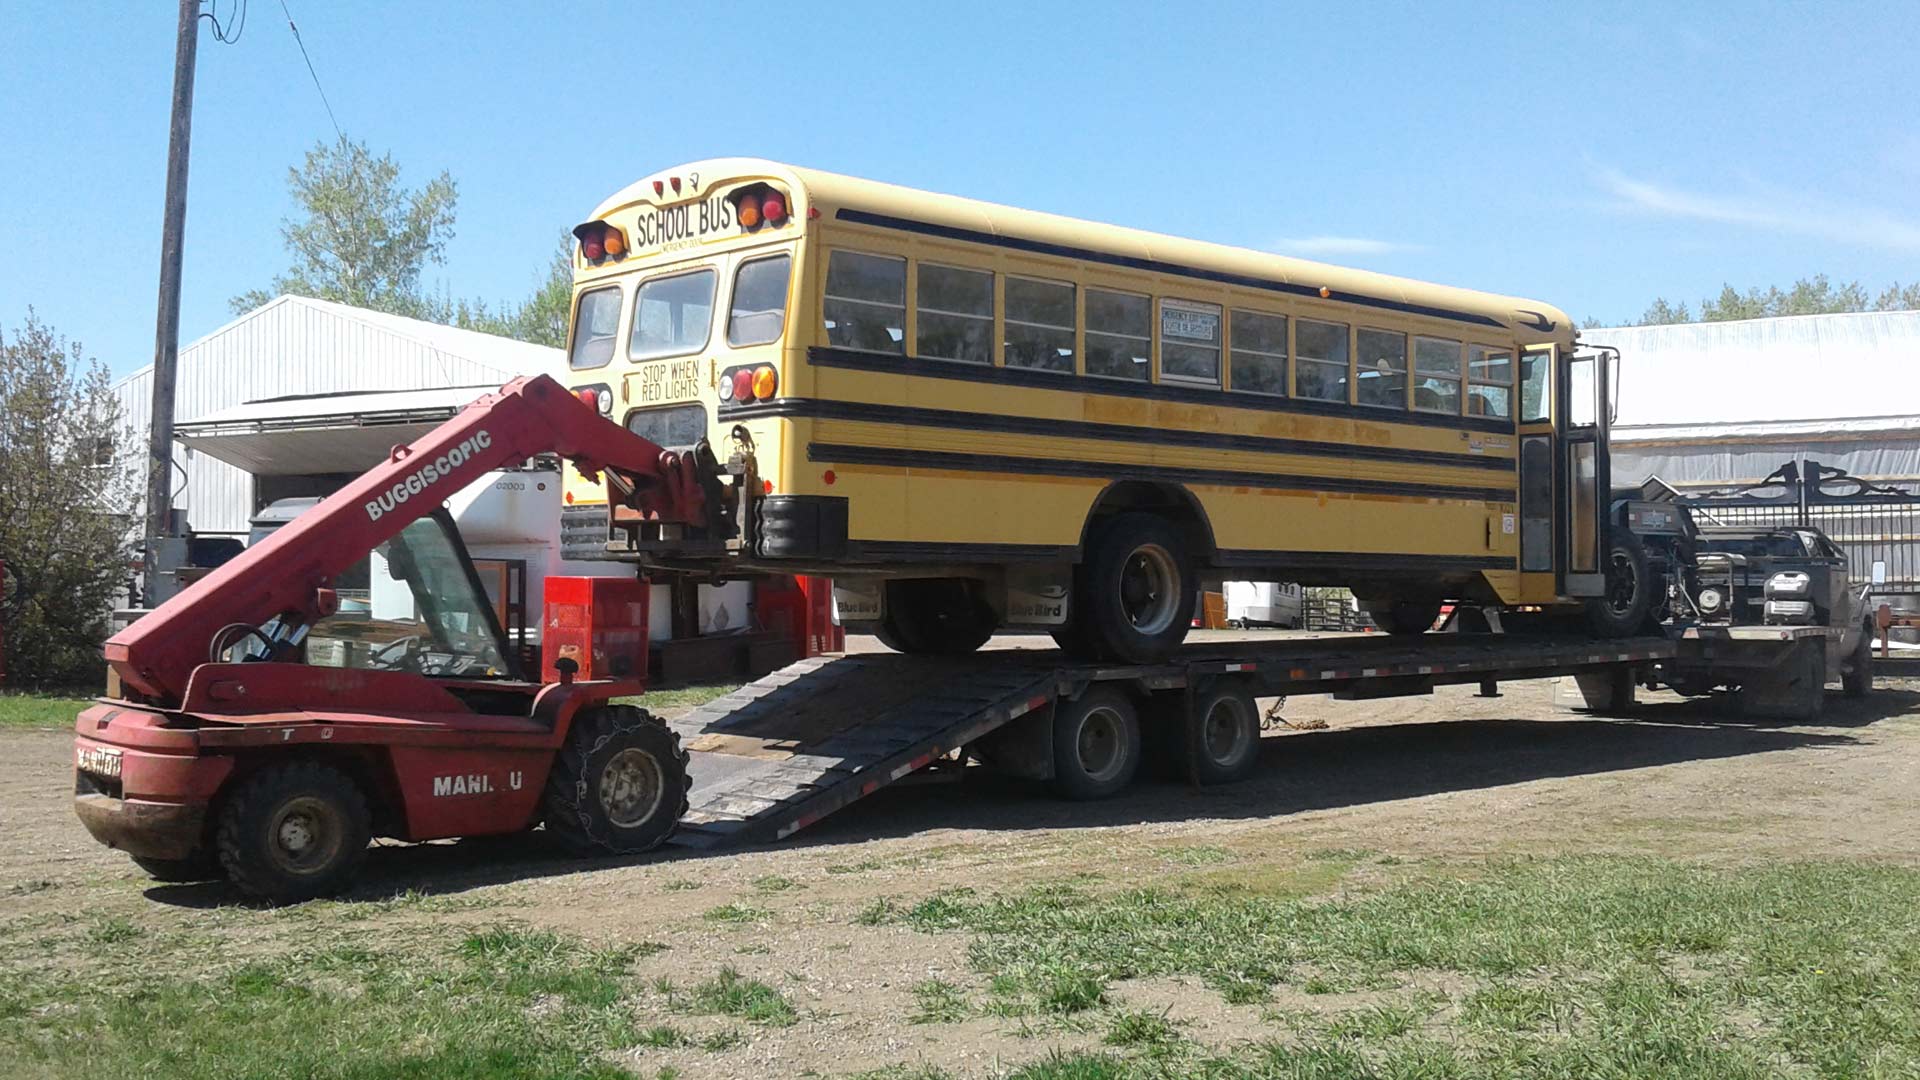 School Bus delivery